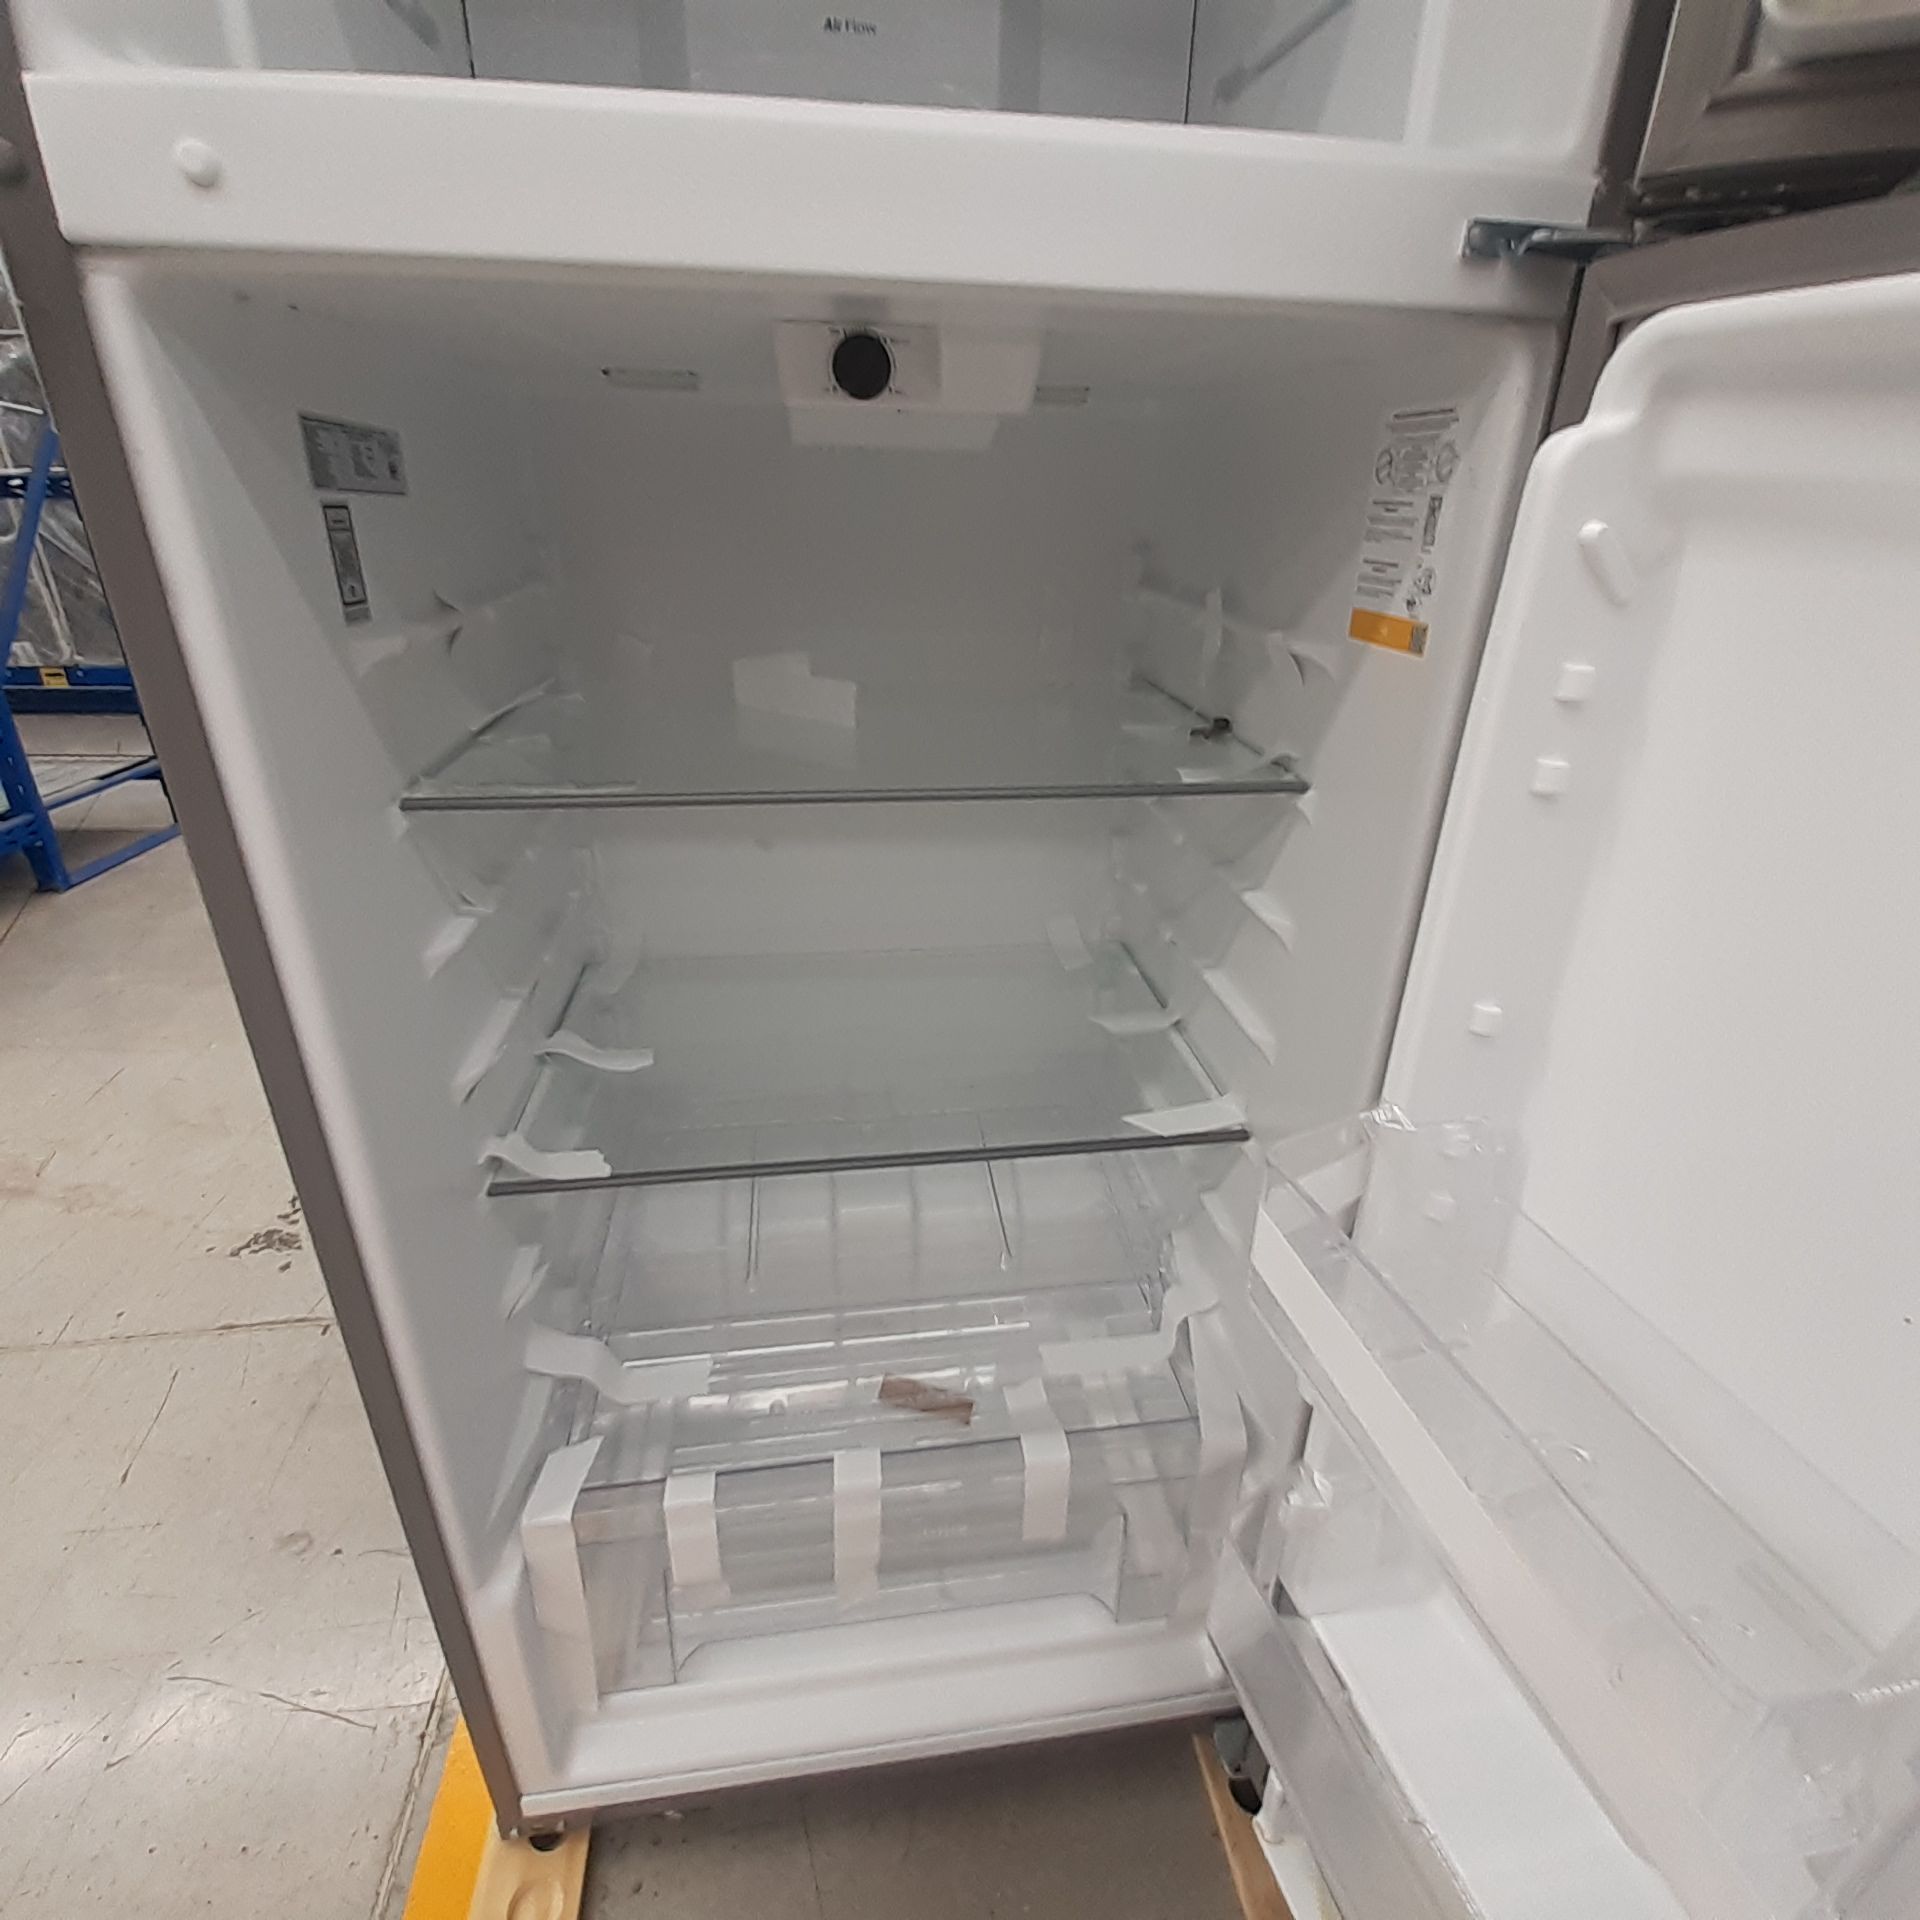 Lote De 3 Refrigeradores: 1 Refrigerador Marca Whirlpool, 1 Refrigerador Marca Mabe, 1 Refrigerador - Image 12 of 22